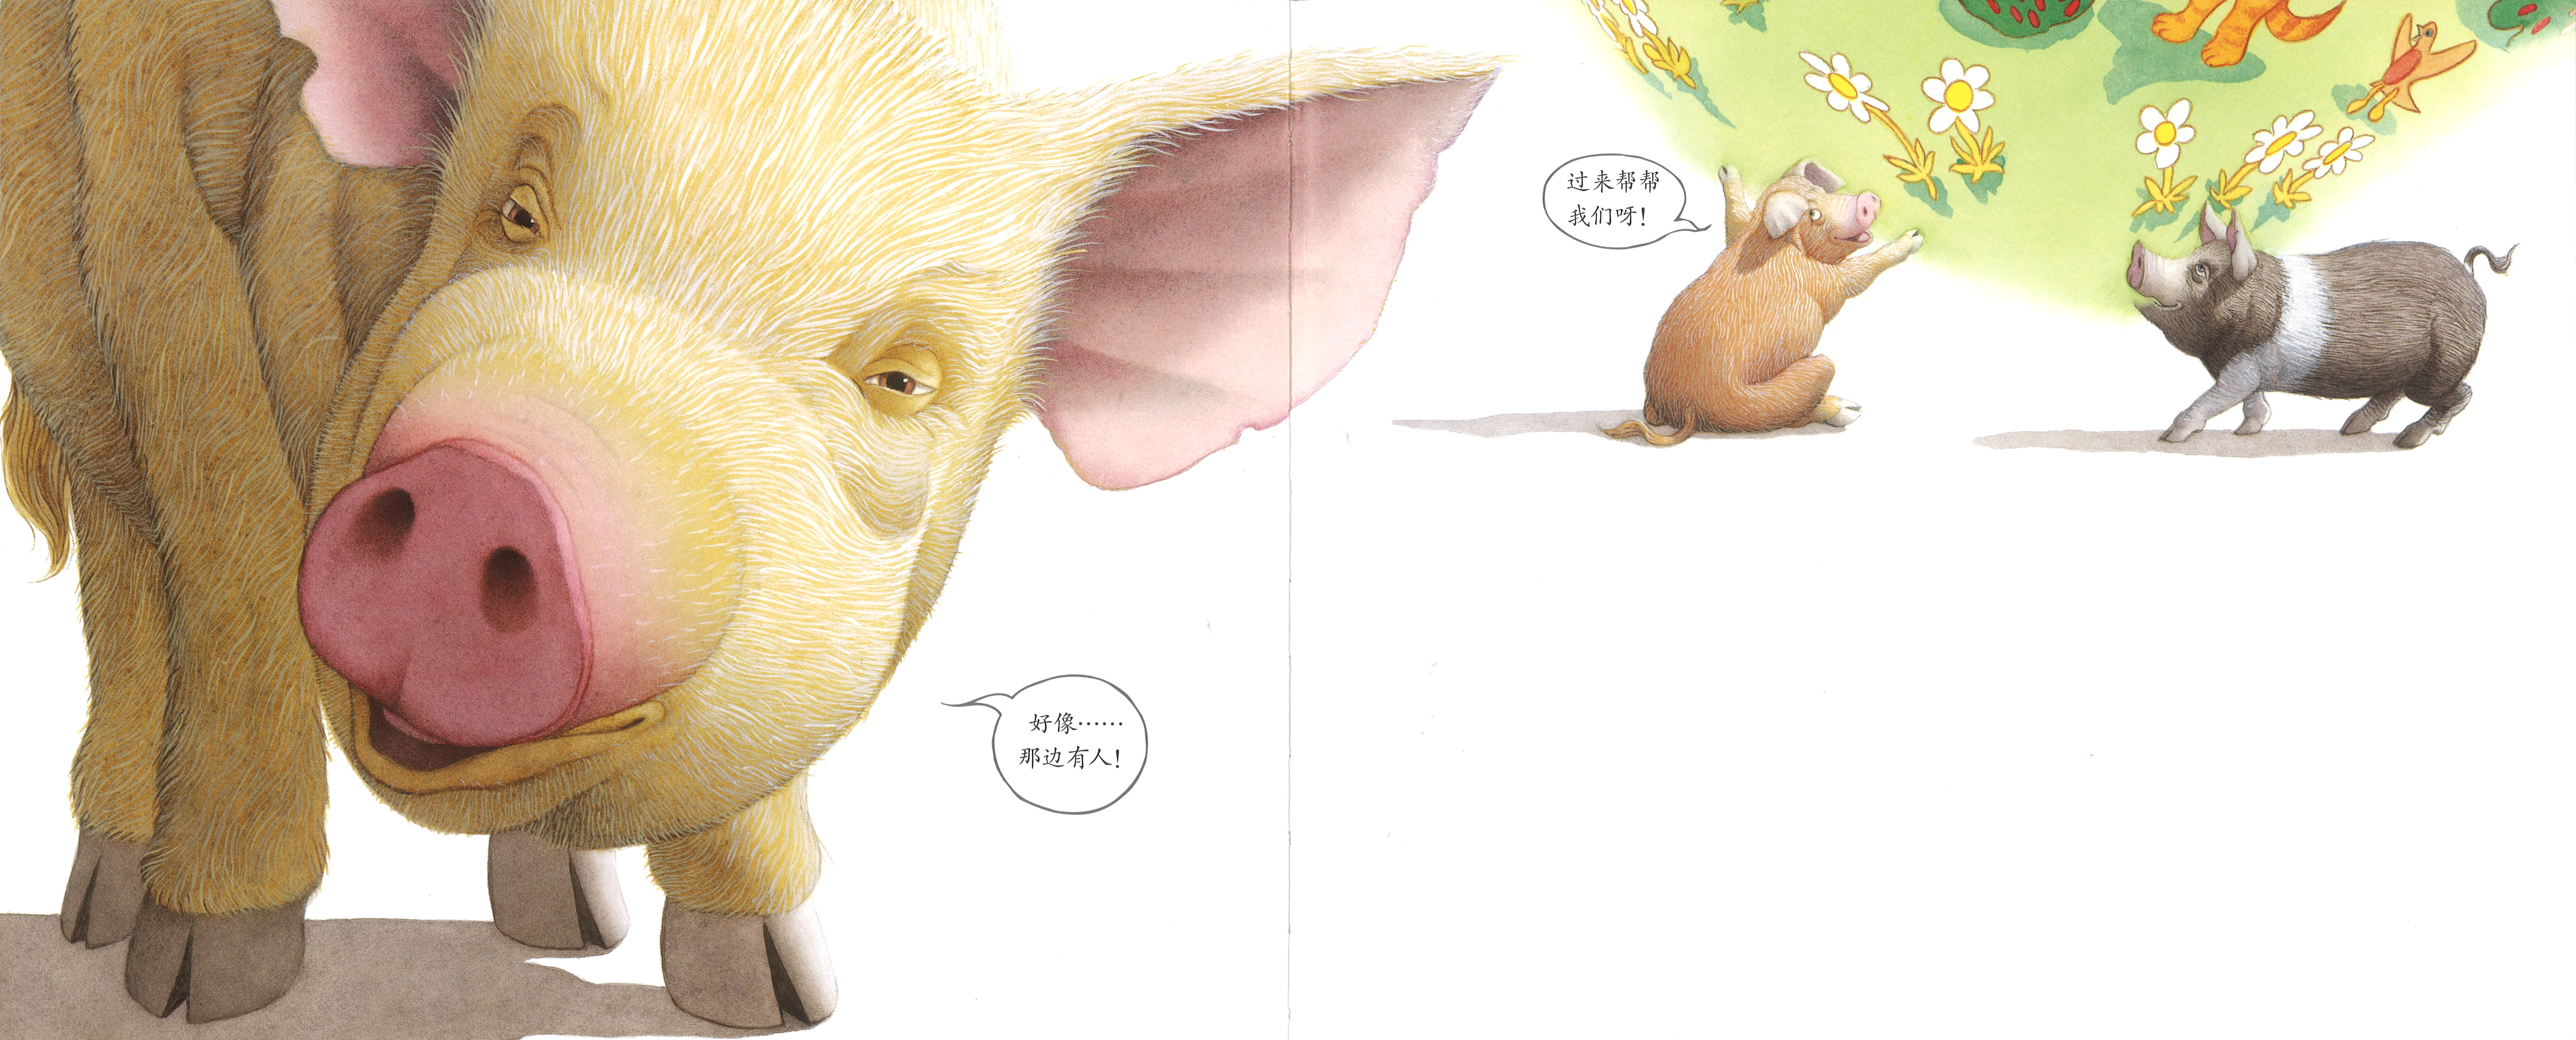 绘本《三只小猪》解读——天马行空的创意